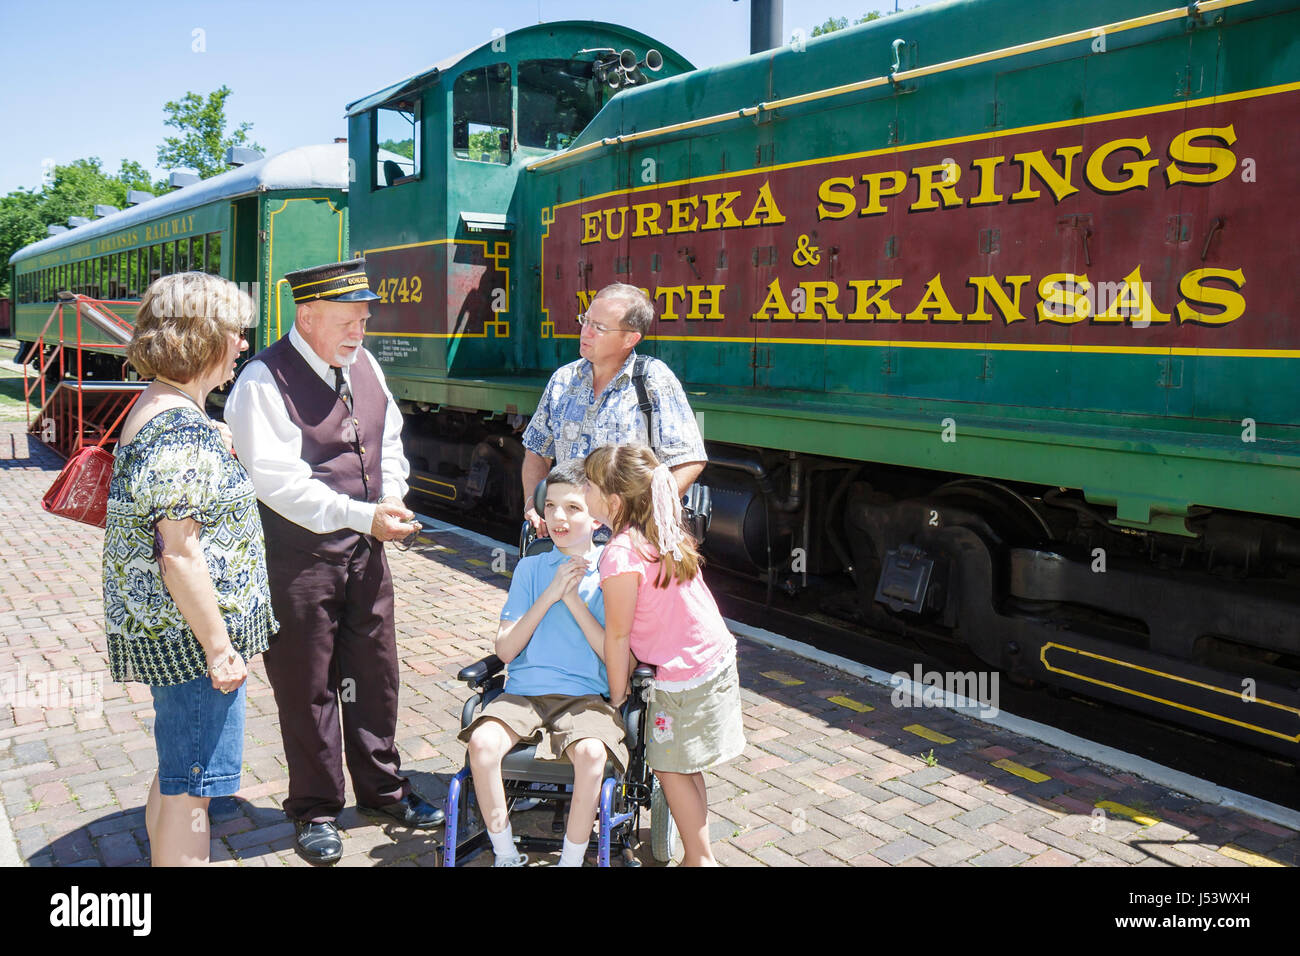 Eureka Springs Arkansas, Ozark Mountains, Eureka Springs & North Arkansas Railway, Dirigent, Mann Männer männlich, Mädchen, weibliche Kinder junge Jungen, männlich d Stockfoto